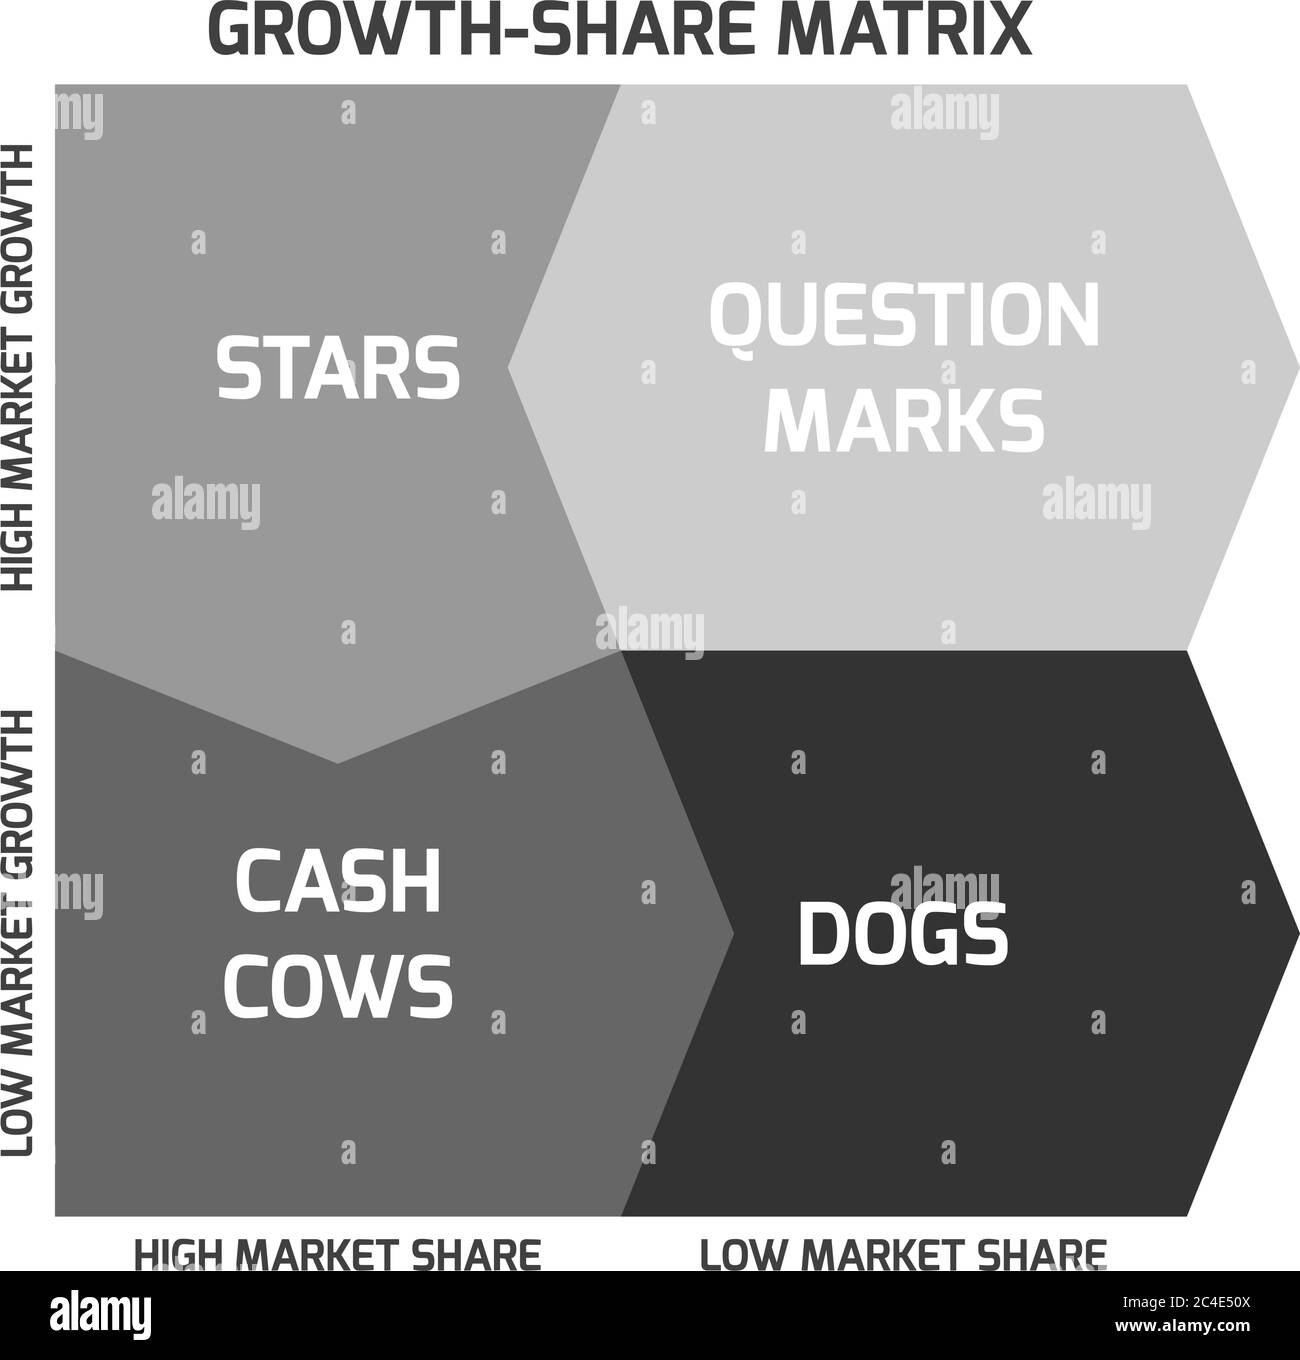 La matrice BCG, o matrice Boston, mira a identificare prospettive di crescita elevata categorizzando i prodotti in base al tasso di crescita e alla quota di mercato. Illustrazione Vettoriale